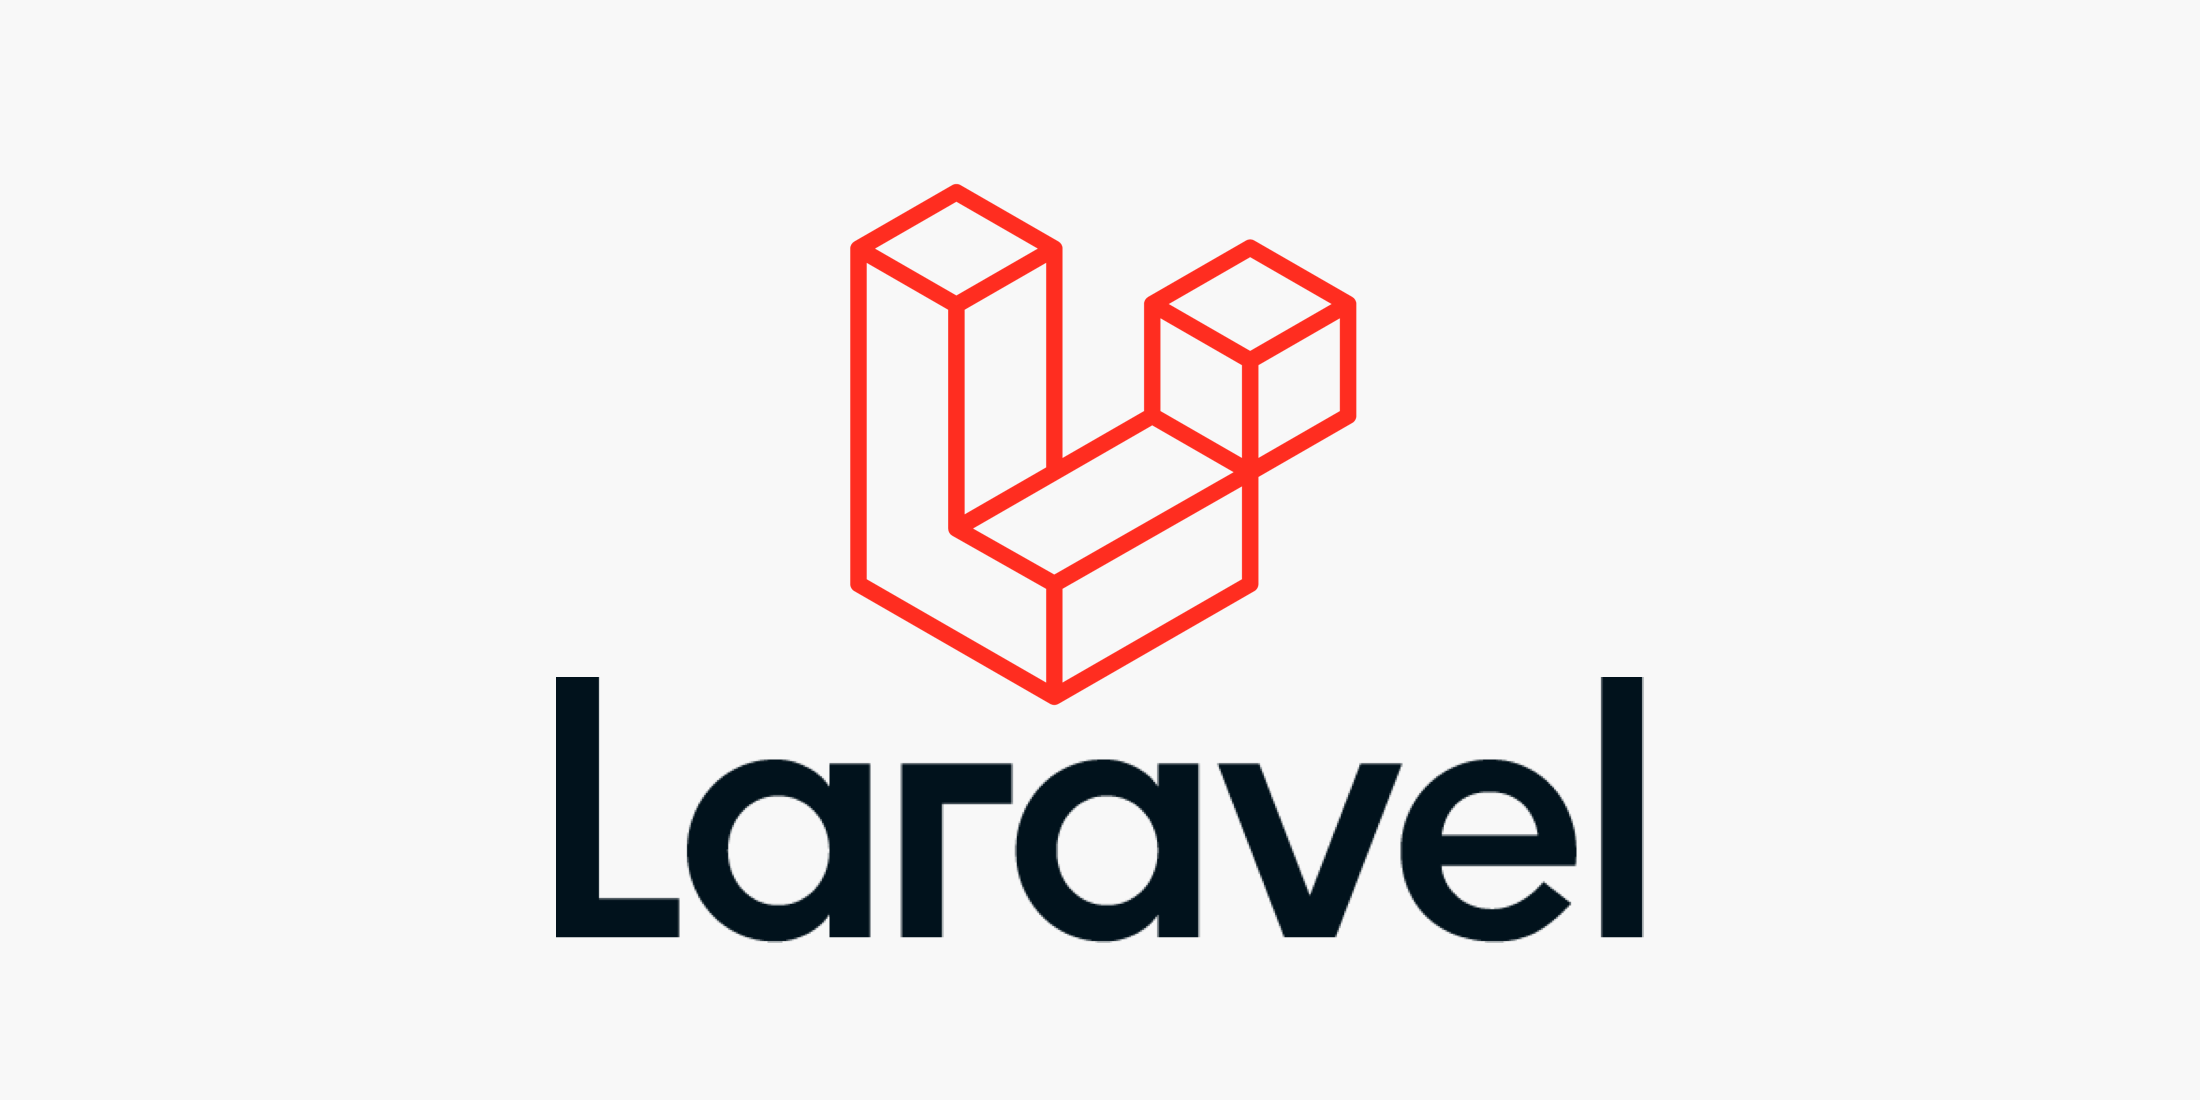 Làm việc với database trong laravel